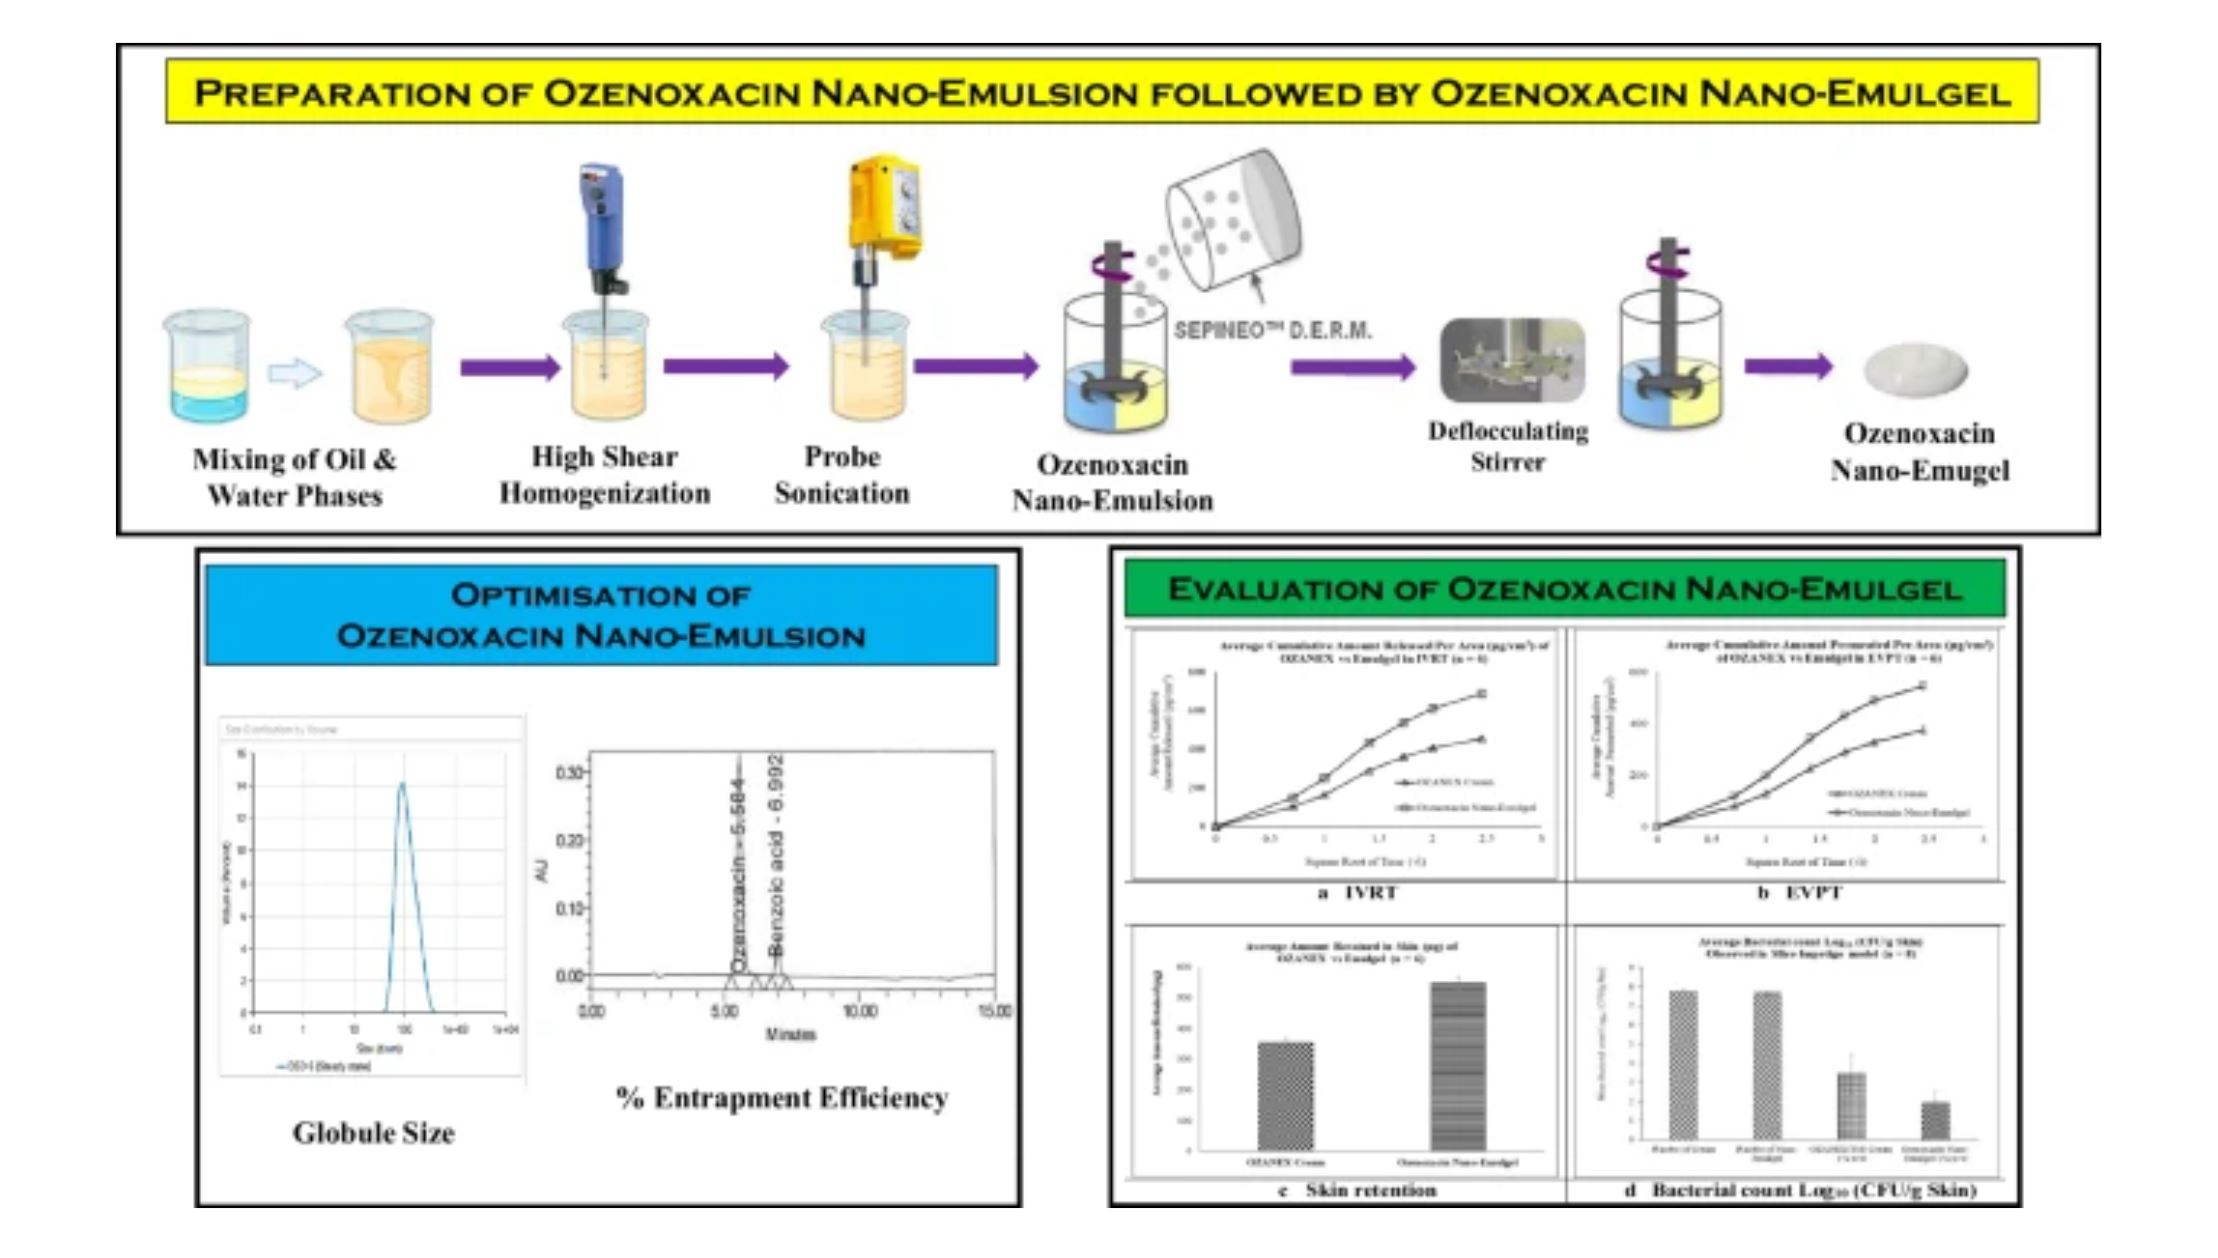 QbD Based Formulation Development and Optimisation of Ozenoxacin Topical Nano-Emulgel and Efficacy Evaluation Using Impetigo Mice Model